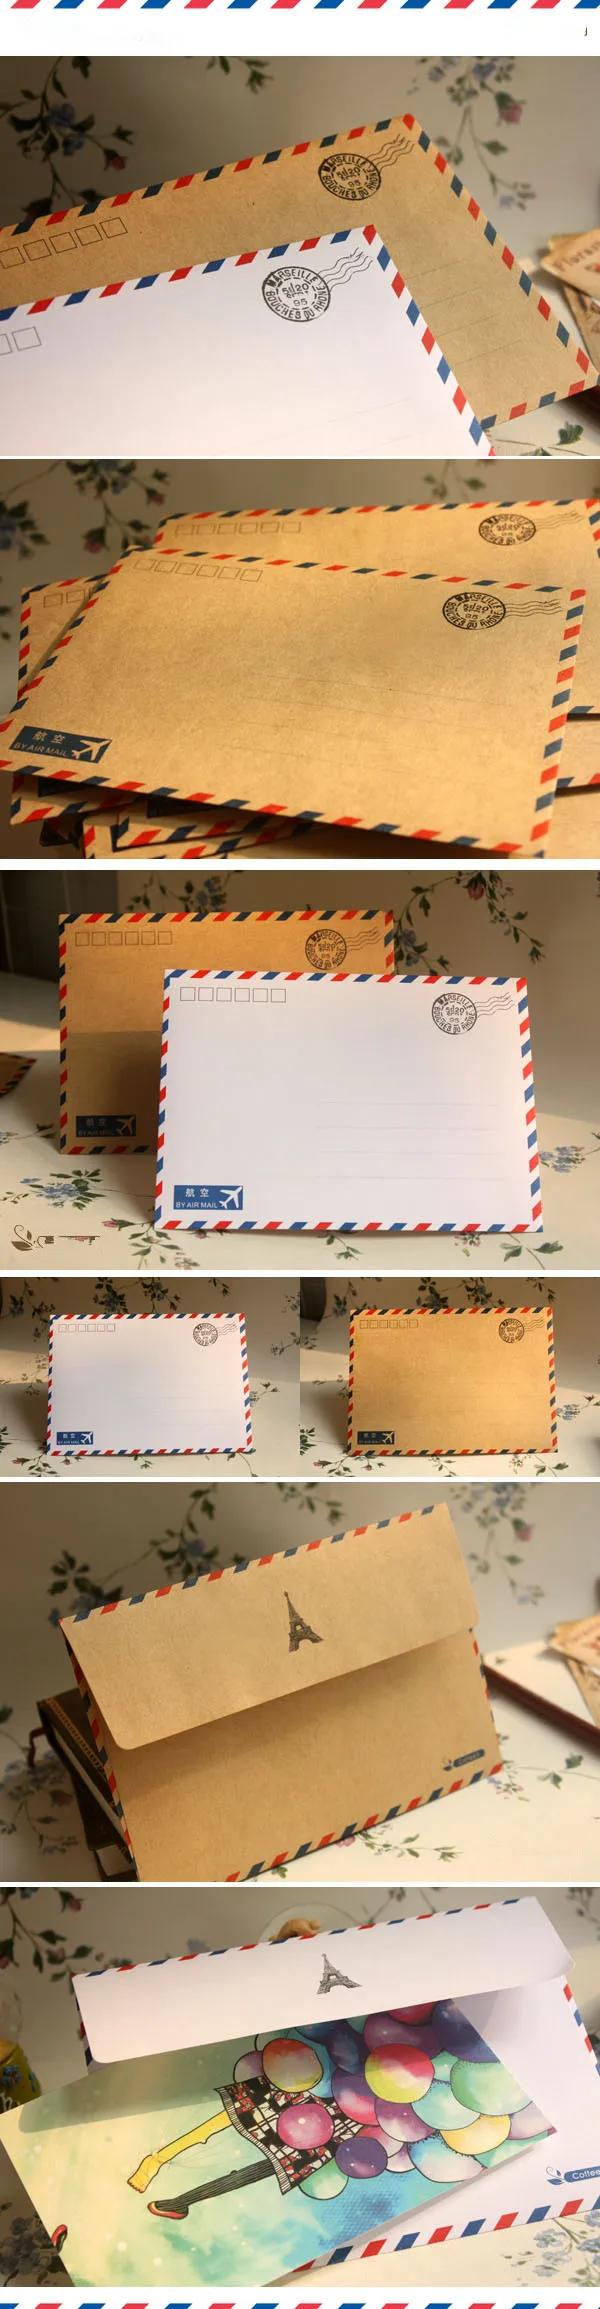 Coloffice 10 шт./лот большой Почтовые открытки бумага для писем Бумага конверт ручной работы Винтаж конверт для студент, школа, офис, подарок